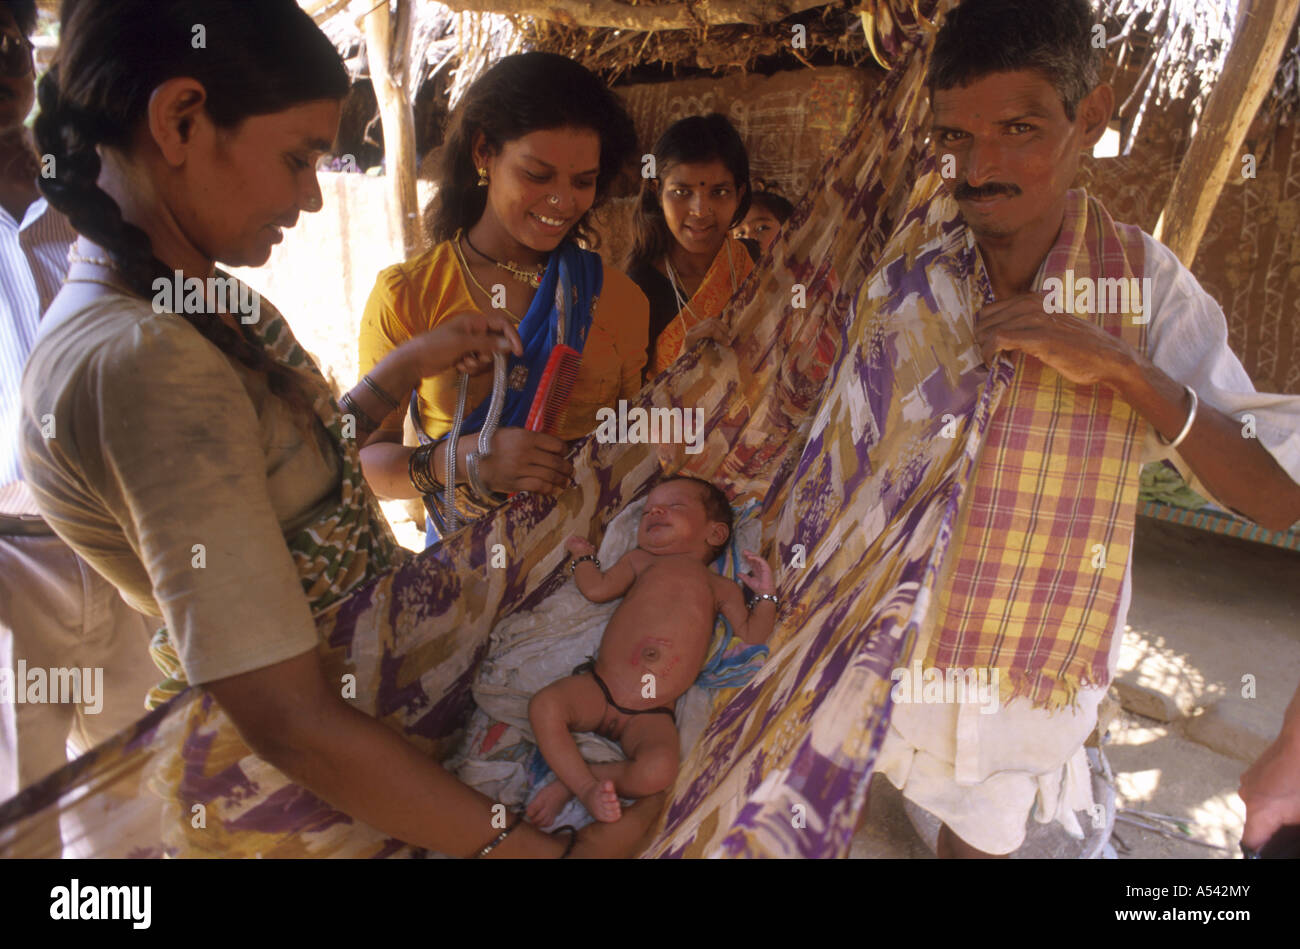 Painet ha2523 5359 Indien Frauen Mutterschaft Familie junges Baby Land sich entwickelnde Nation entwickelt wirtschaftlich Kultur. Stockfoto